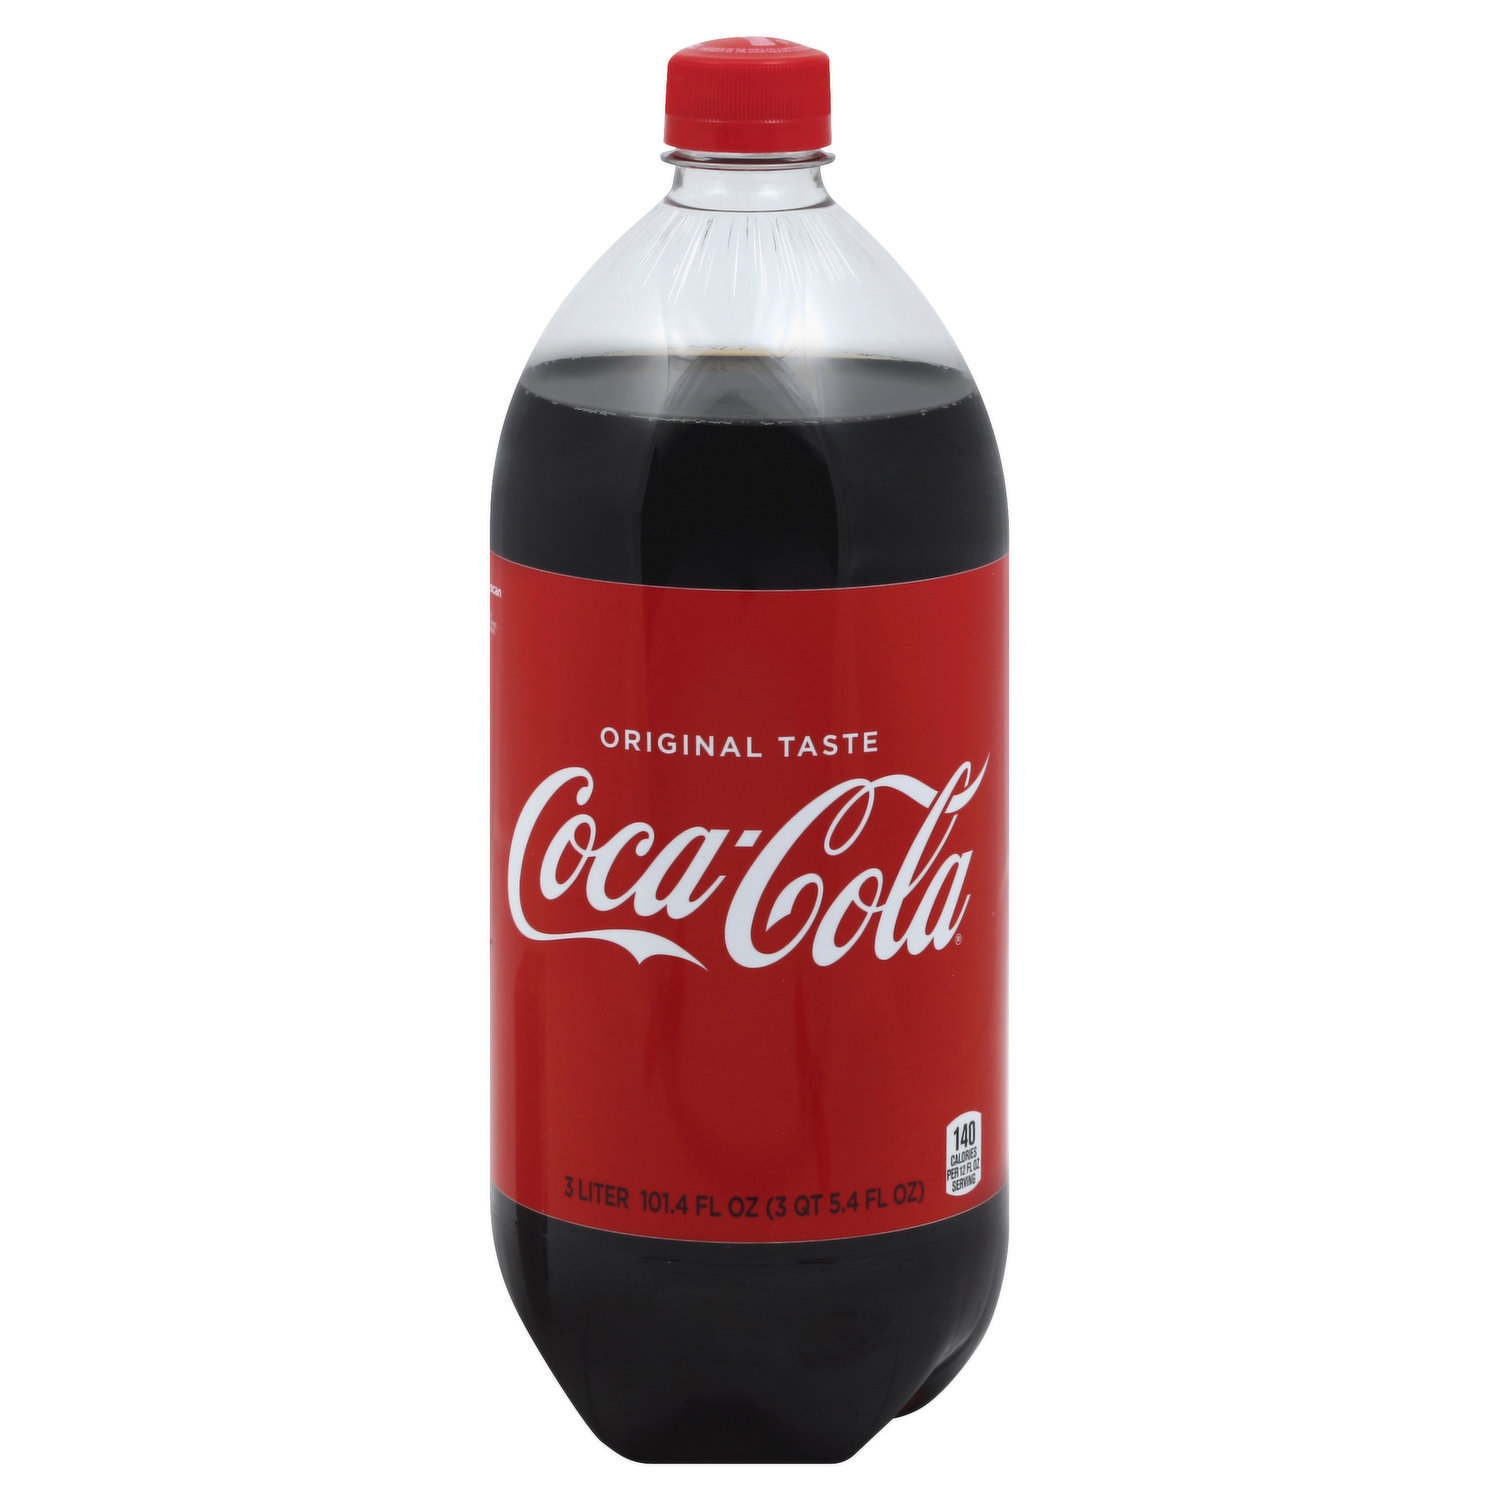 Original taste - Coca-Cola - 1.75 L ℮